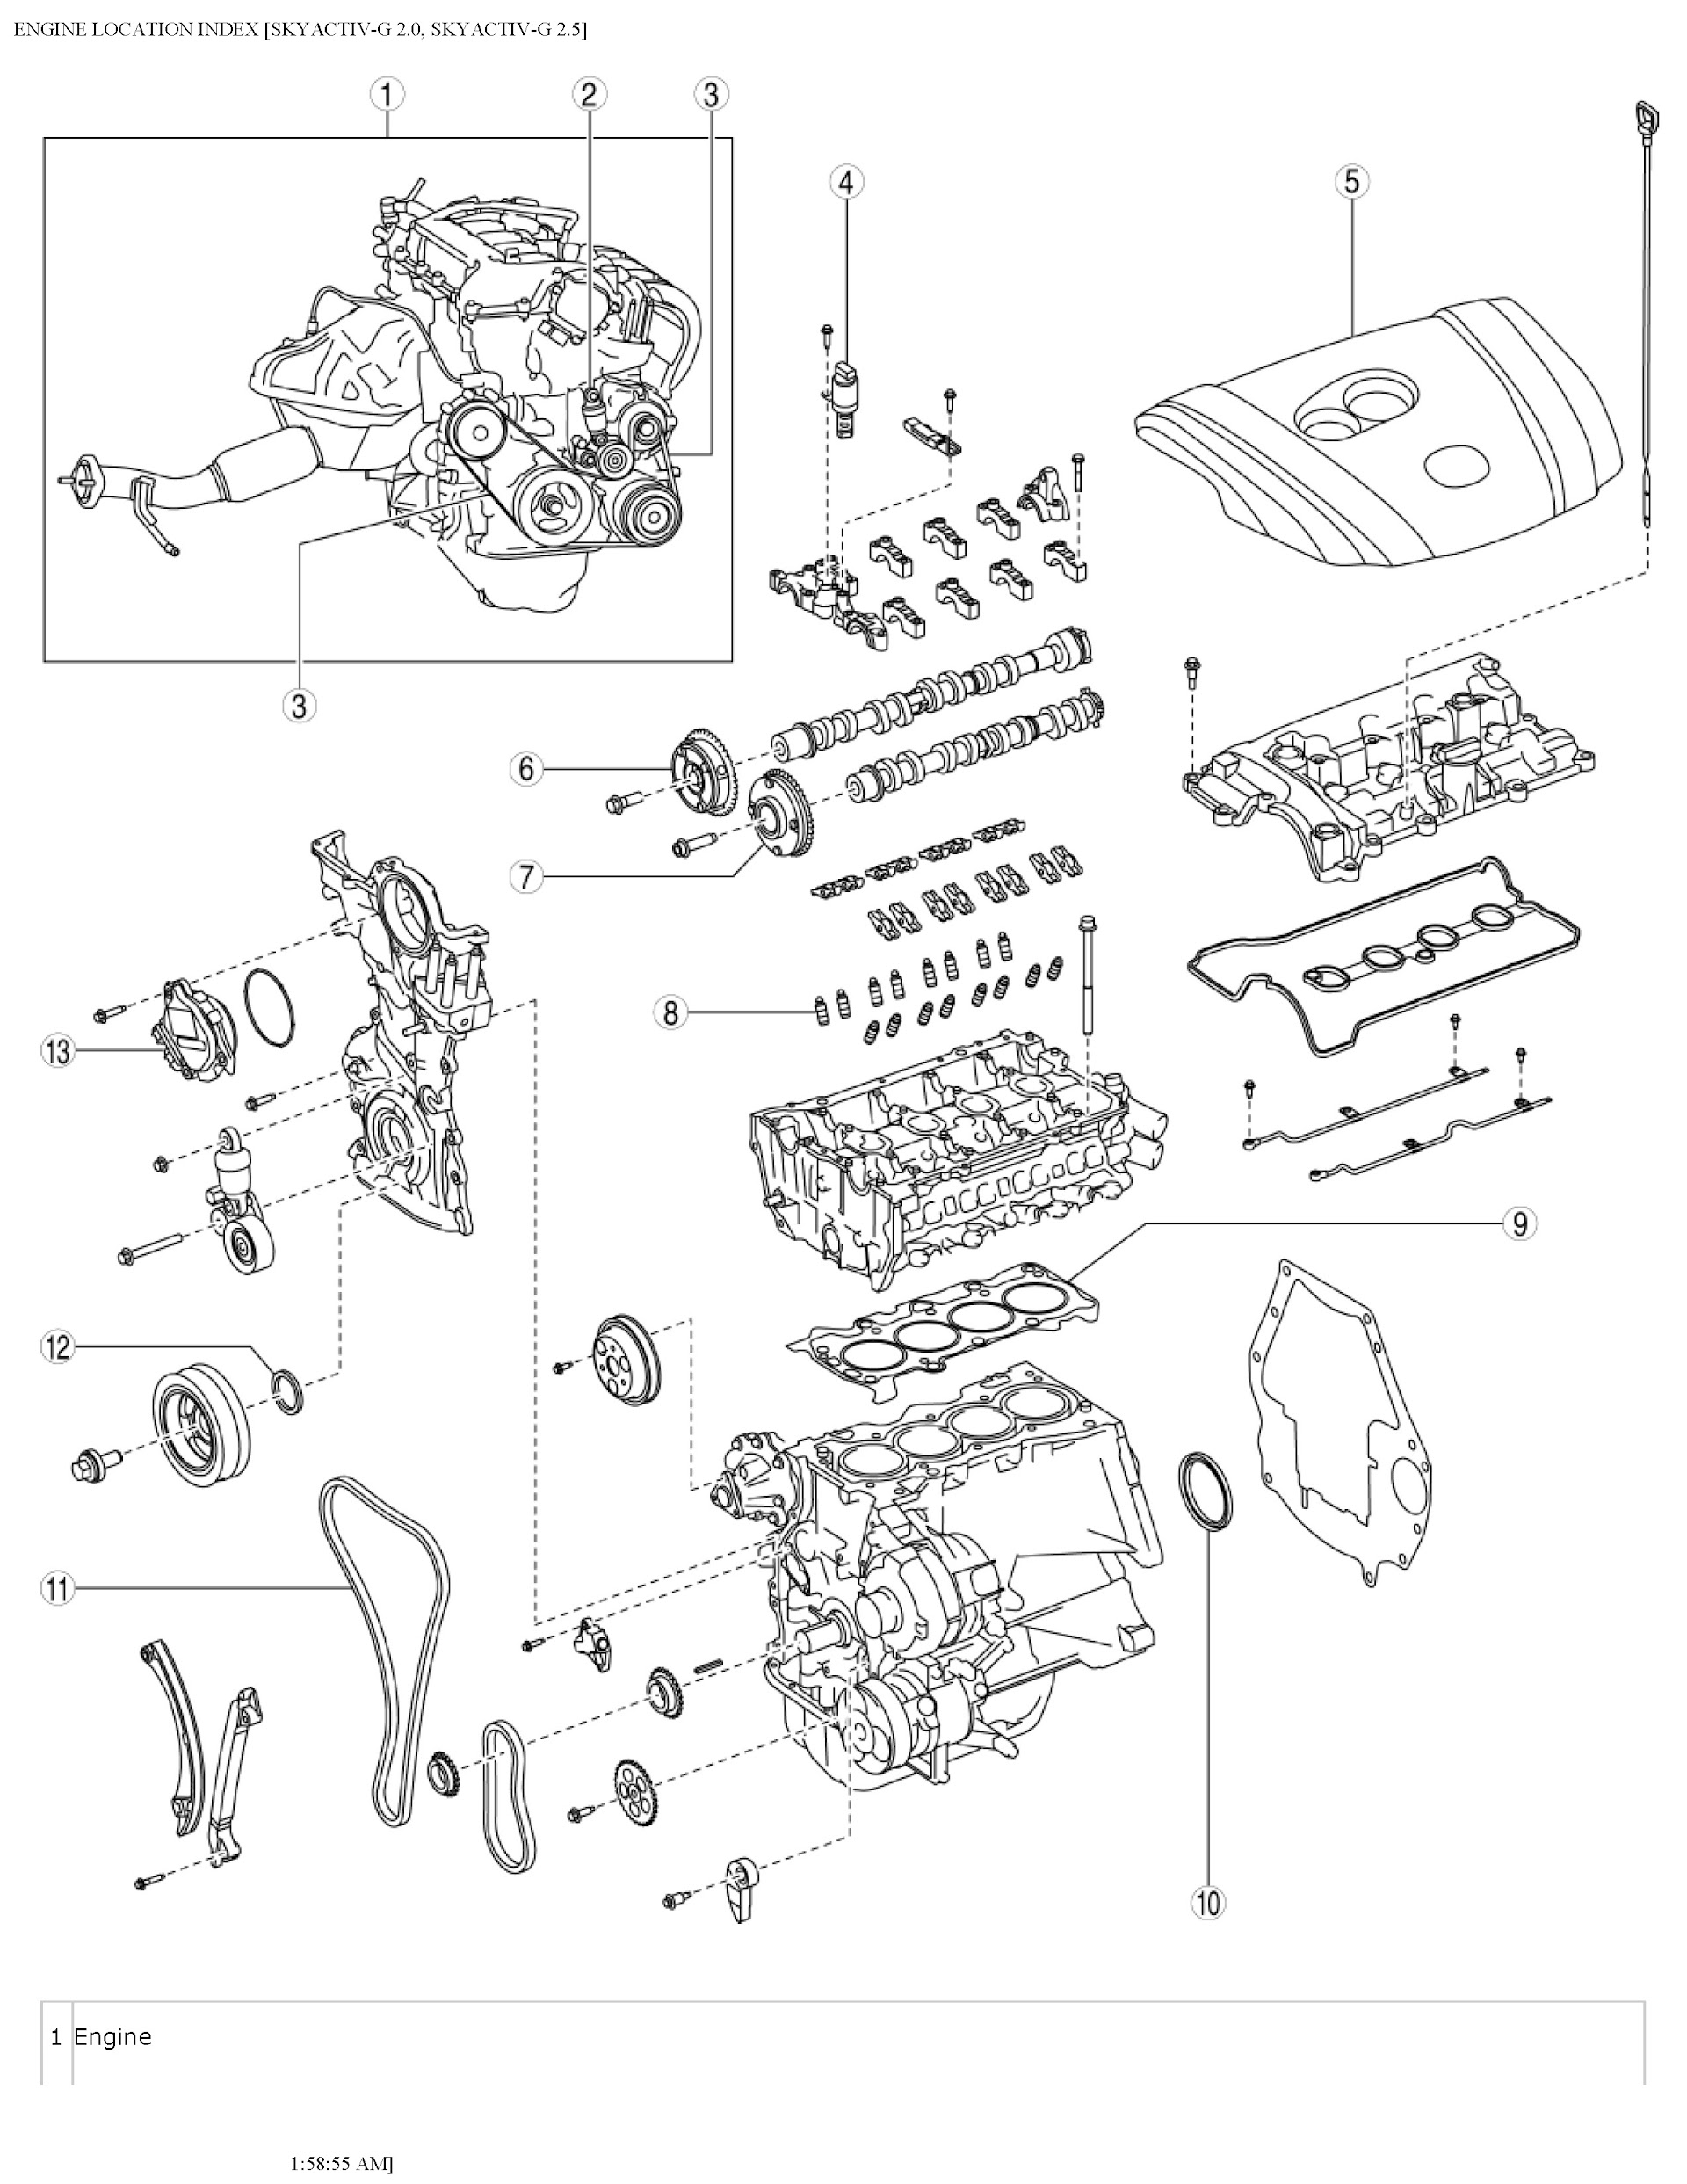 2014 Mazda Mazda3 Repair Manual, Engine Mount and Removal